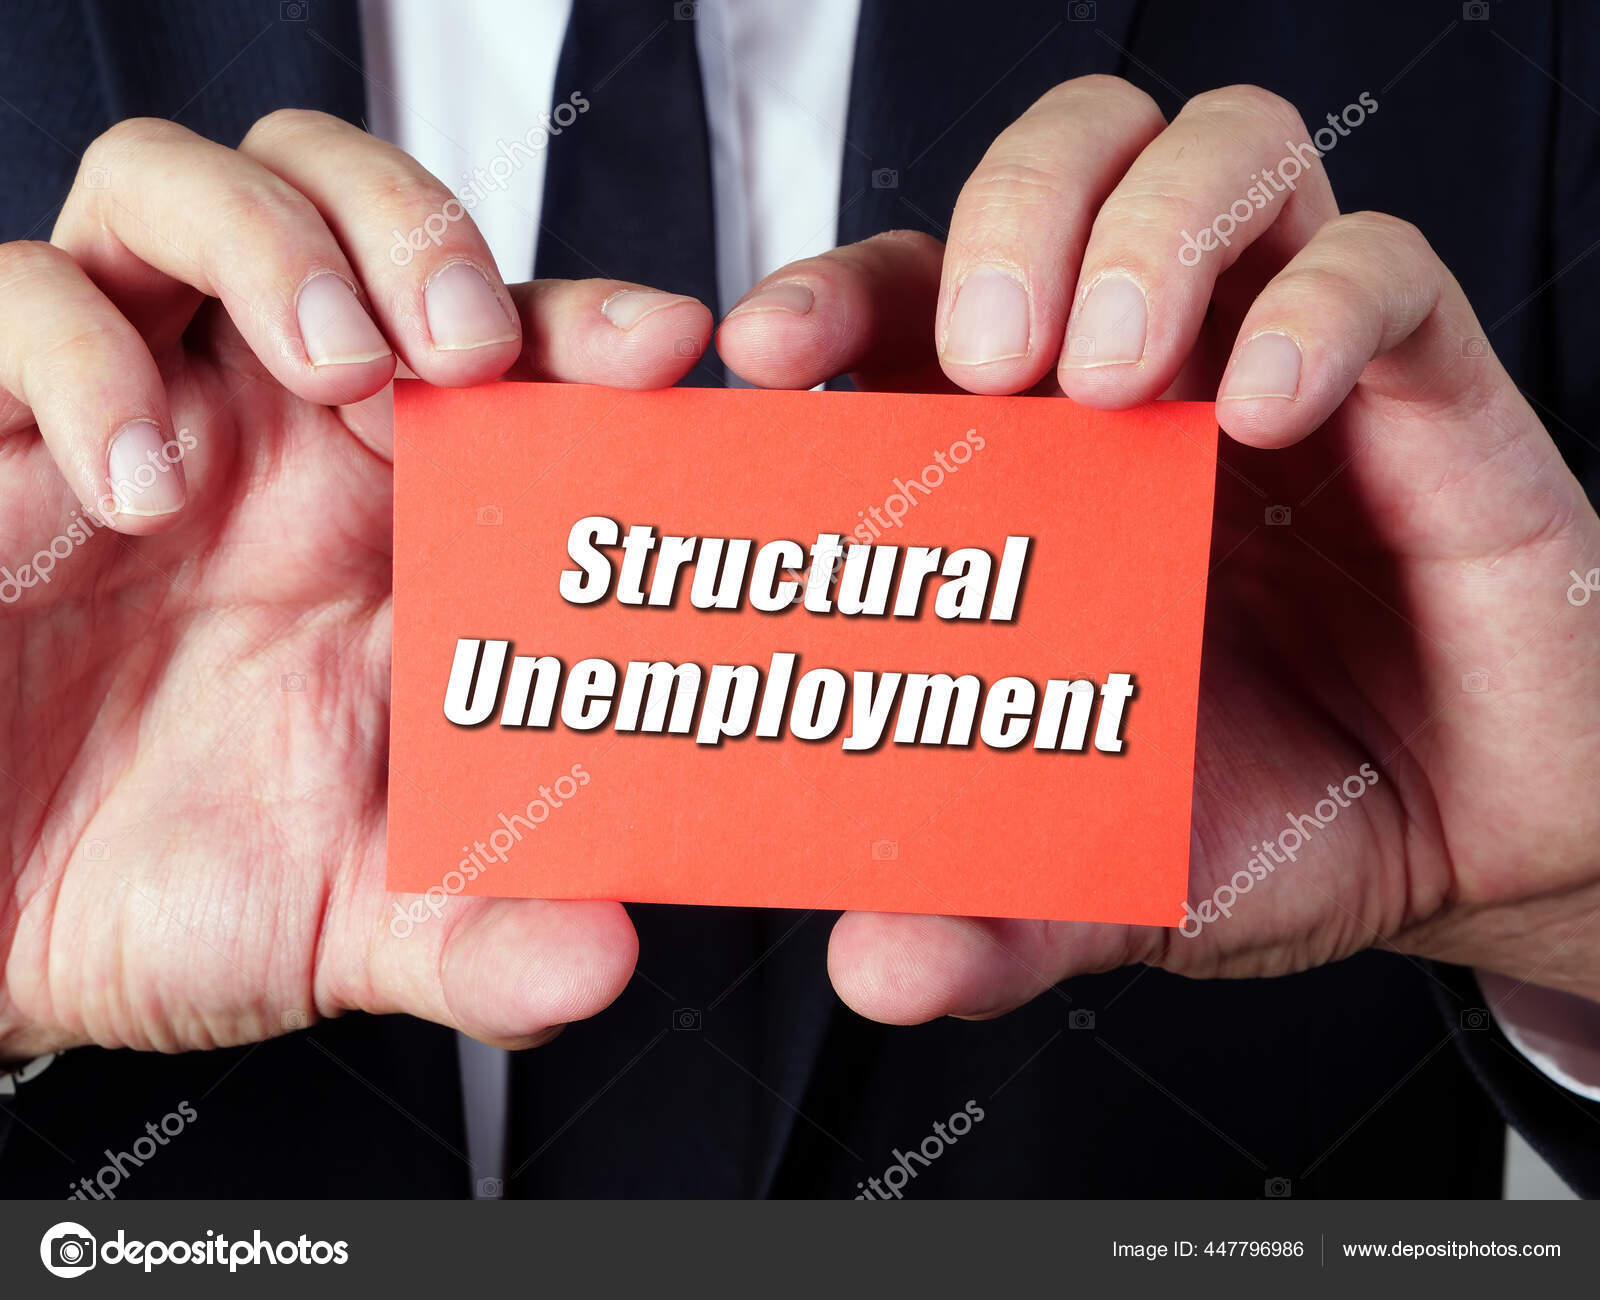 структурне безробіття, визначення, приклади, економіка